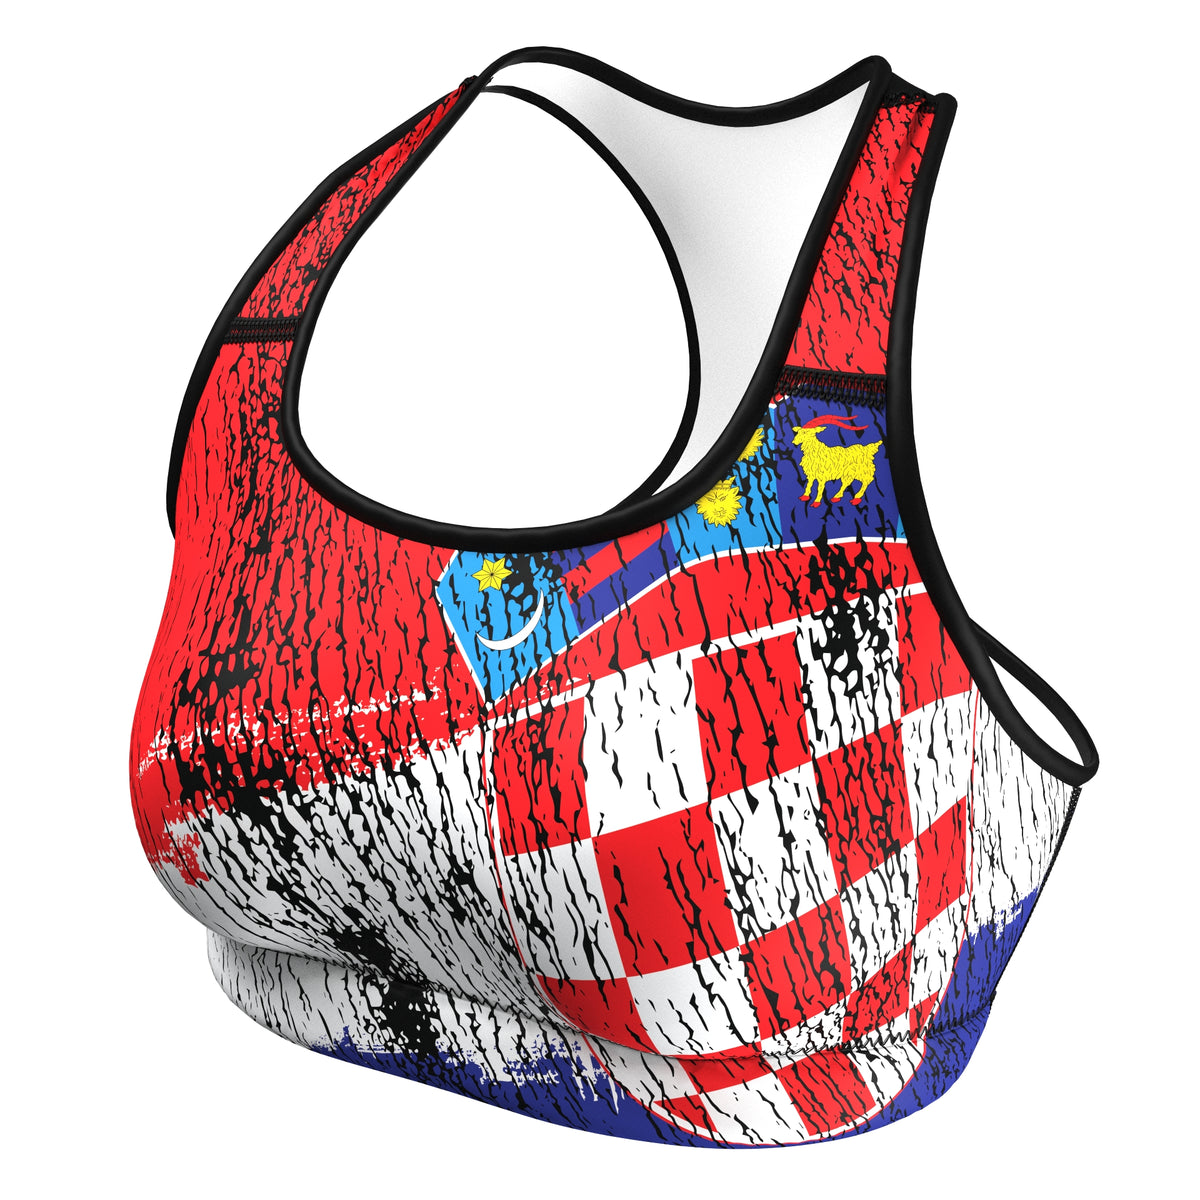 Croatia (Hrvatska) - Urban (Sports Bra) Olympian